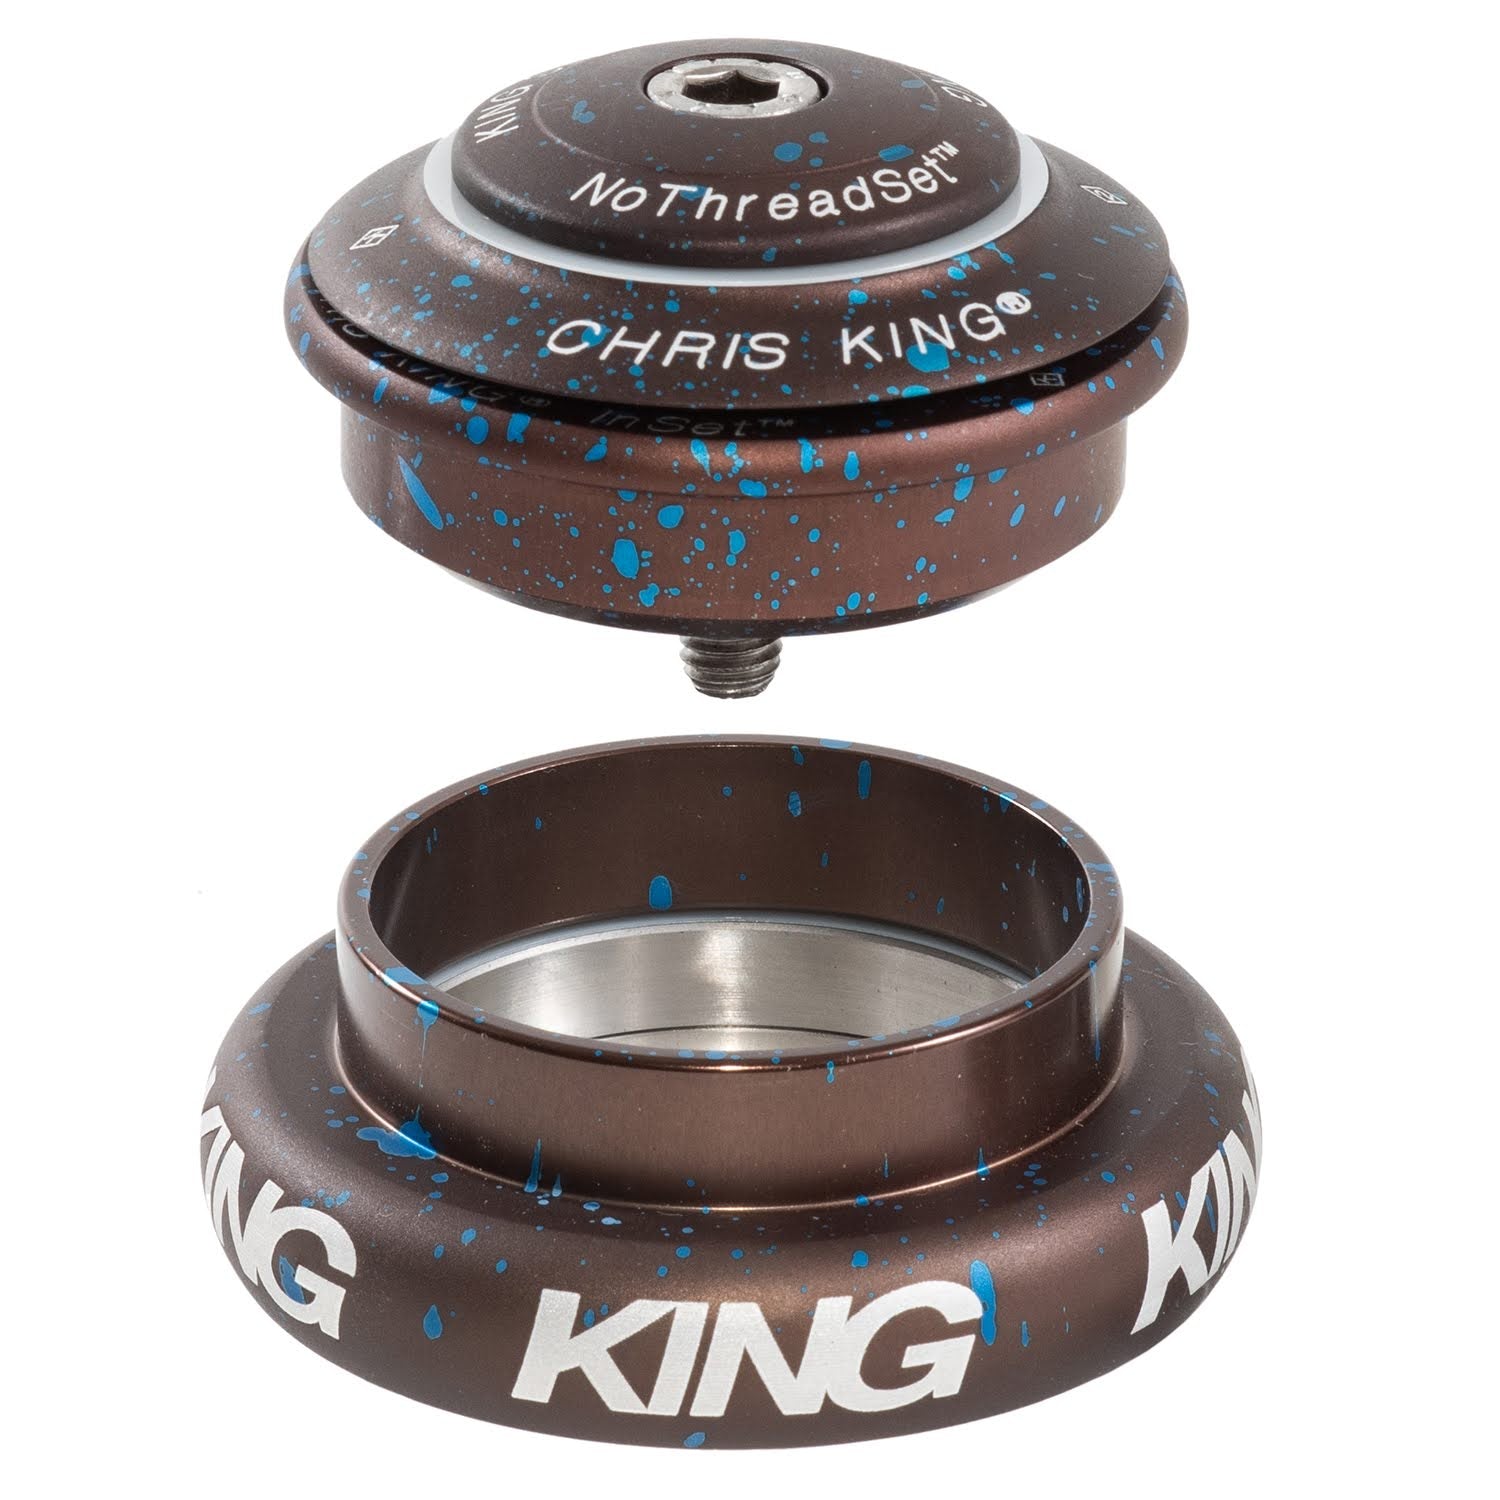 CHRIS KING ARD44 Kit Splash Limited